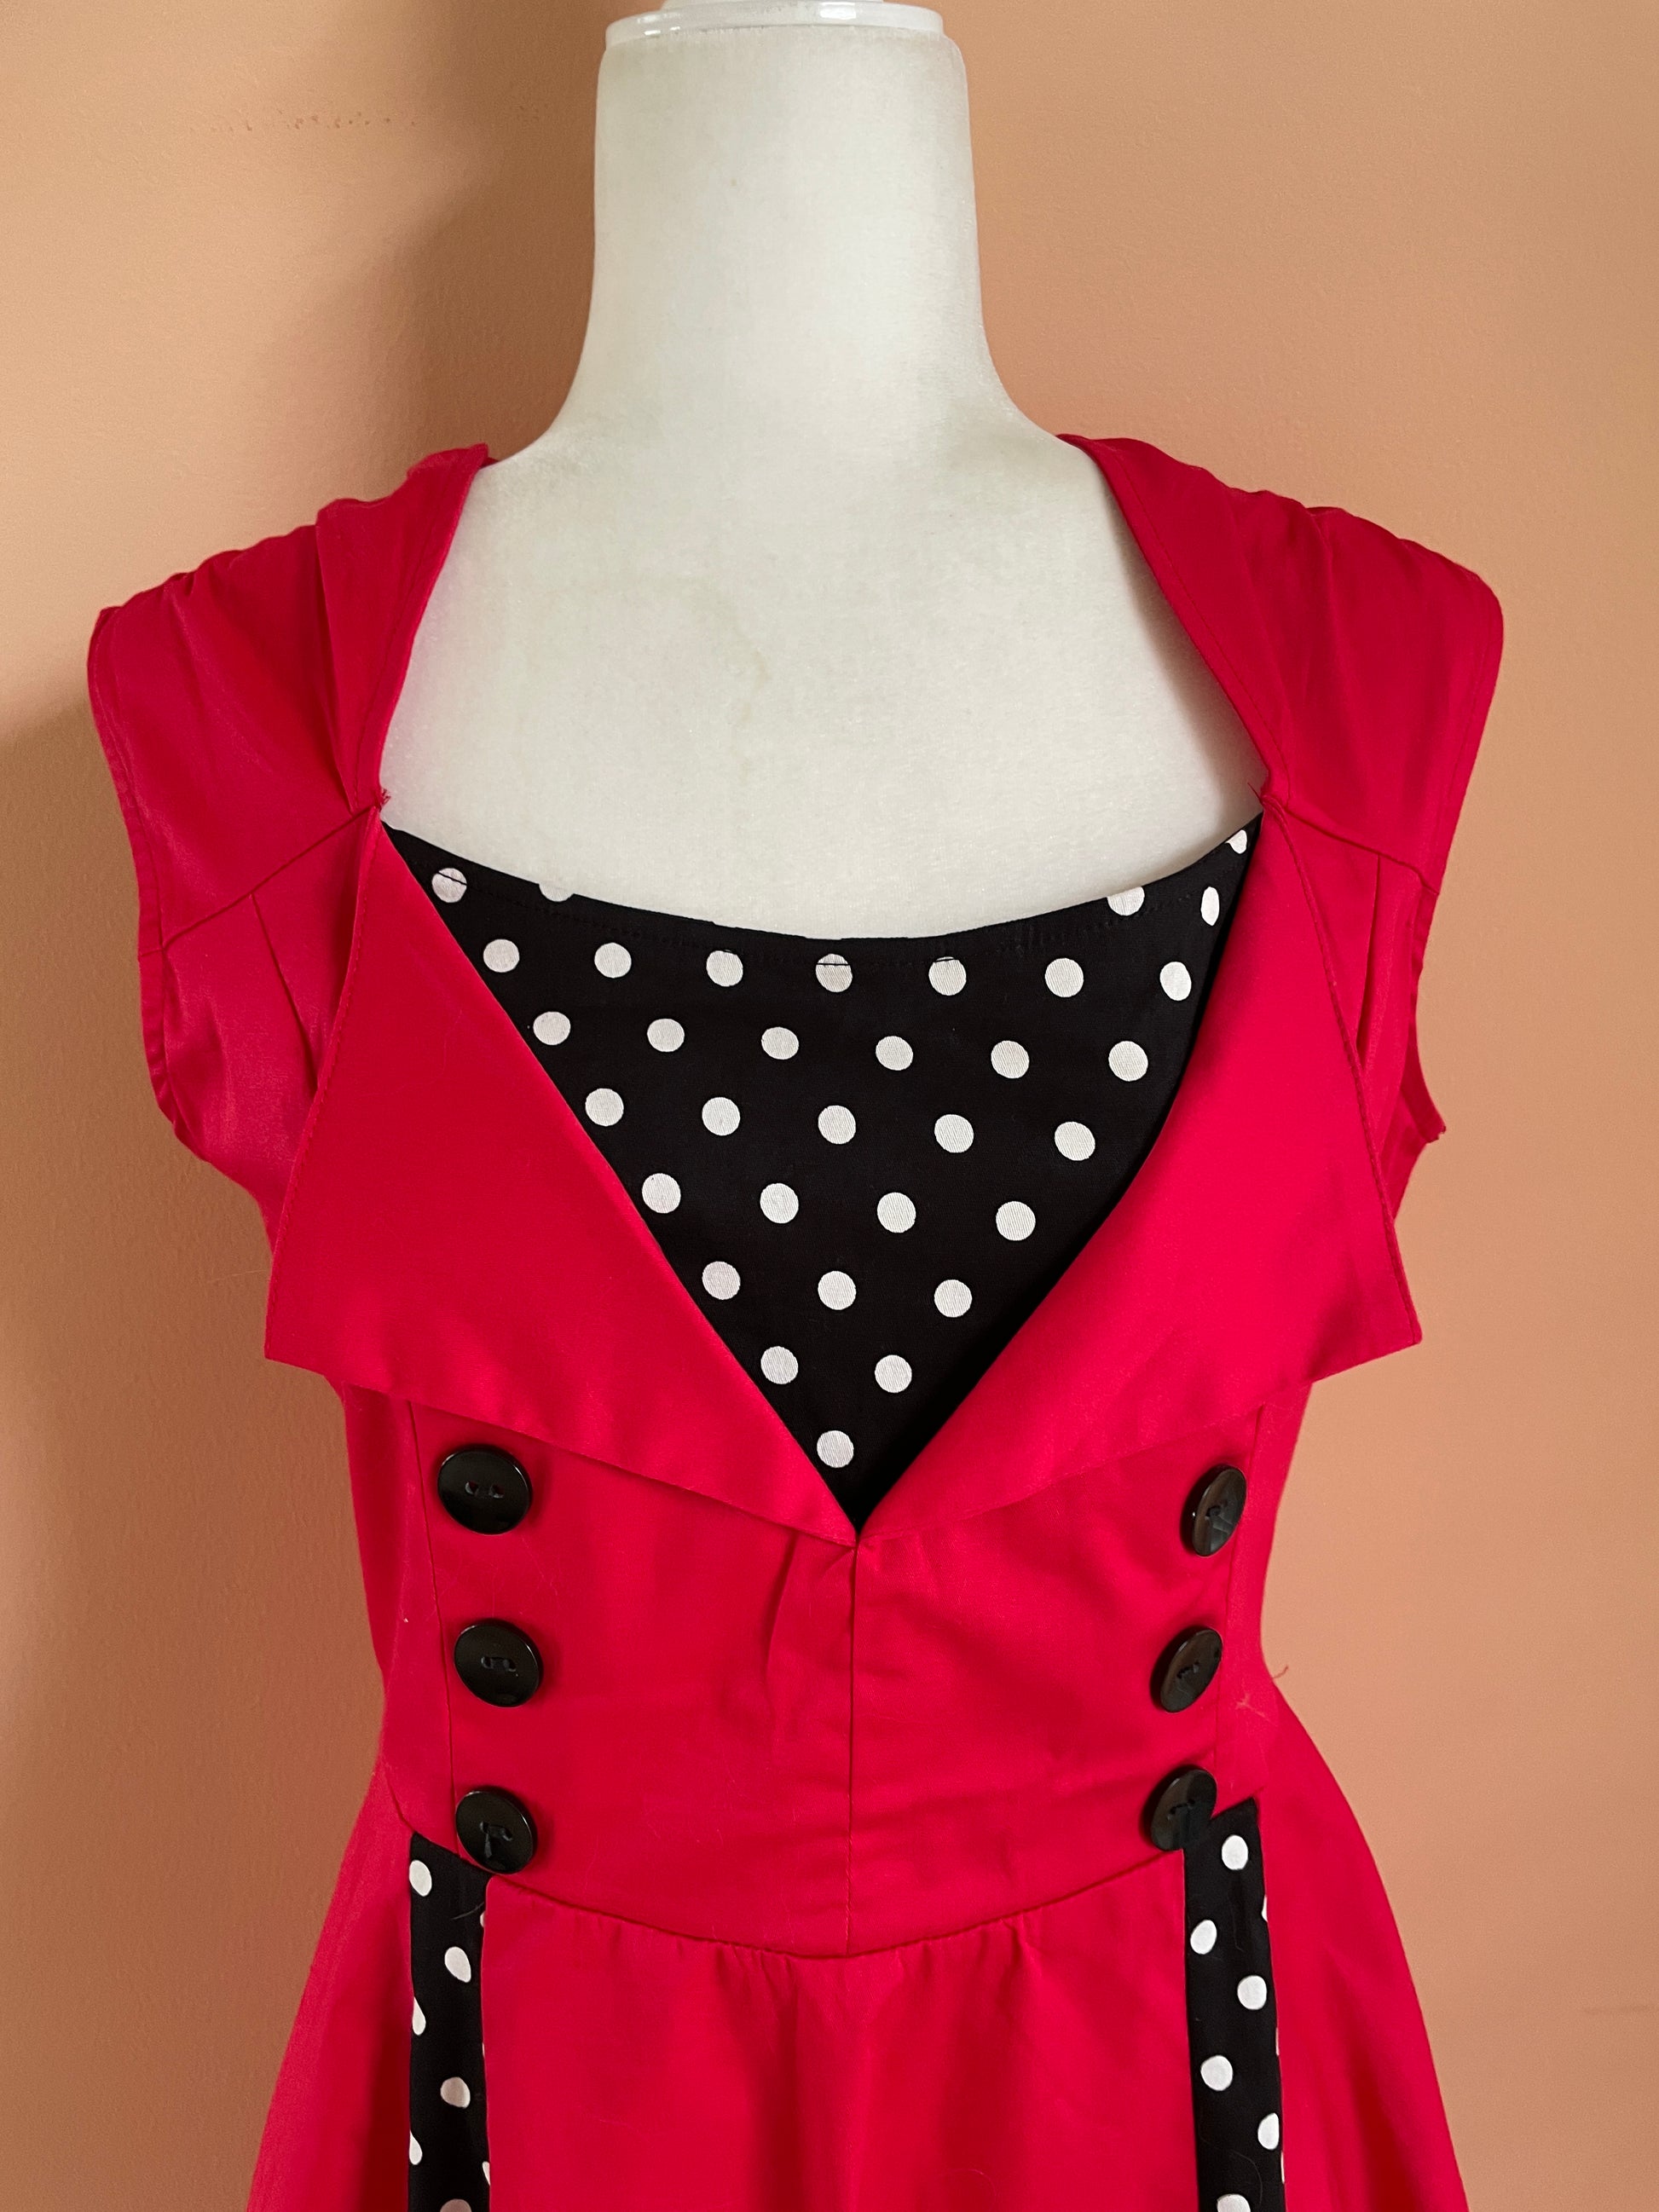  Girl in Red 2000’s Sleeveless Black Polka Dot Cotton Dress M